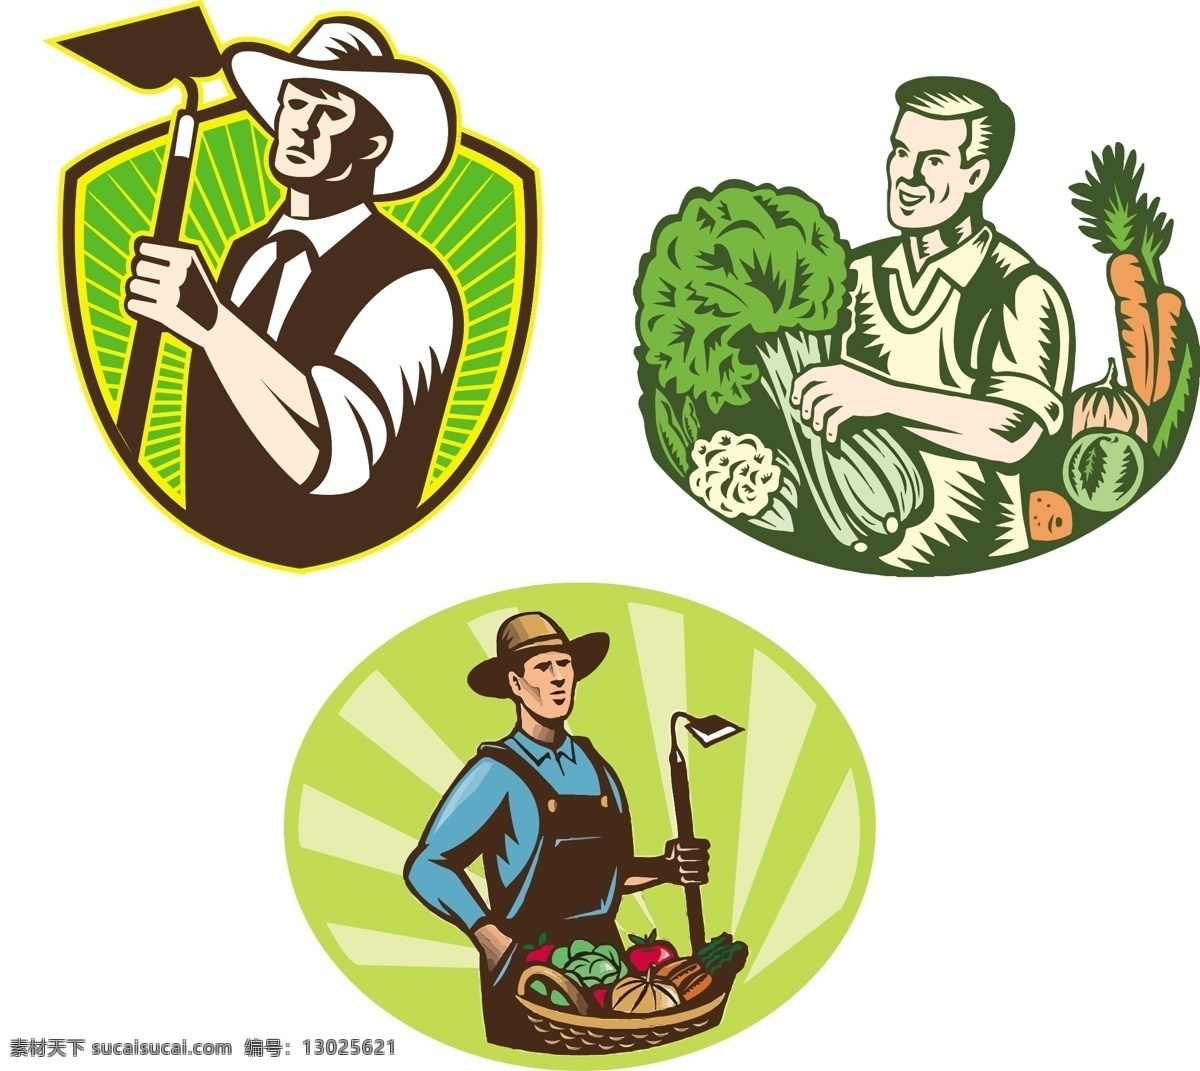 卡通农民 农业图标 农业 锄头 蔬菜 肥料小图 收获 有机肥料 卡通设计